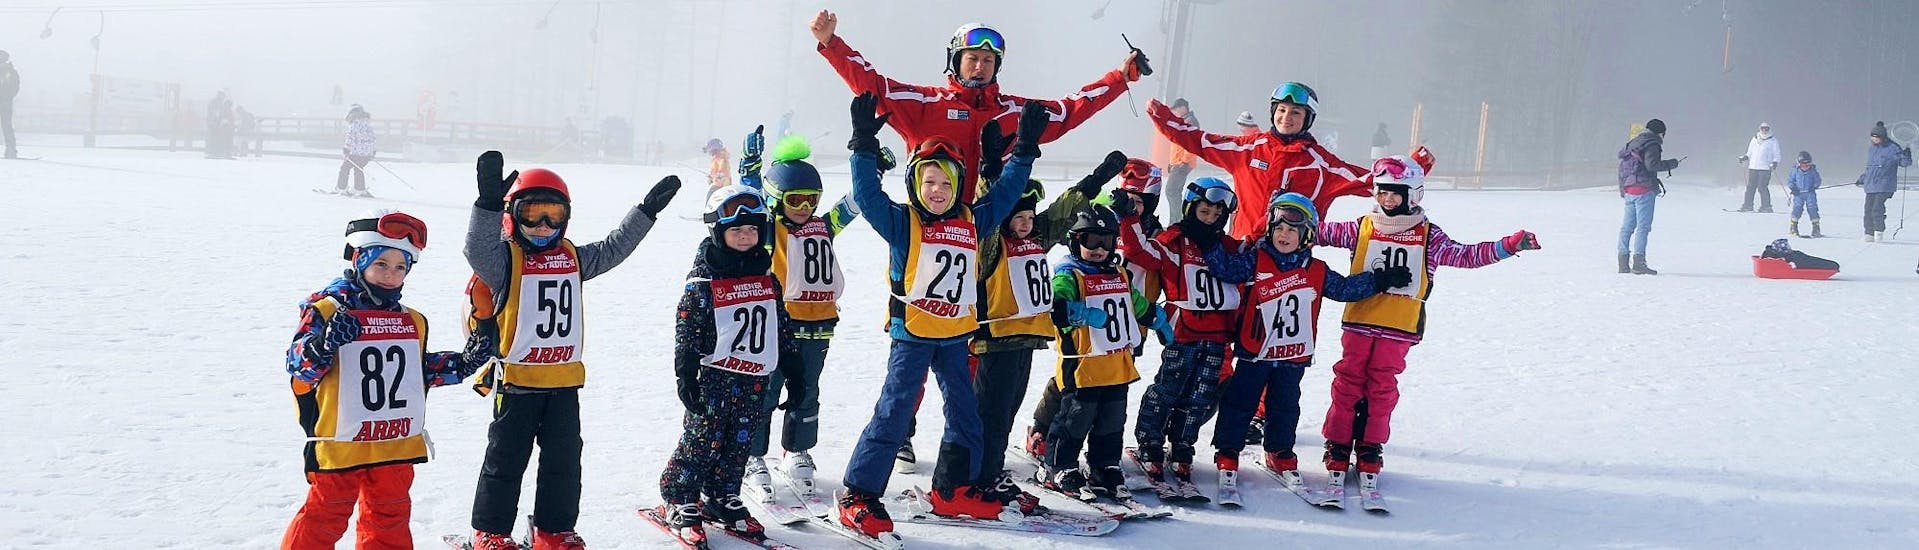 kids-ski-lessons-bambini-3-5-y-halfday-holidays-skischule-semmering-hero